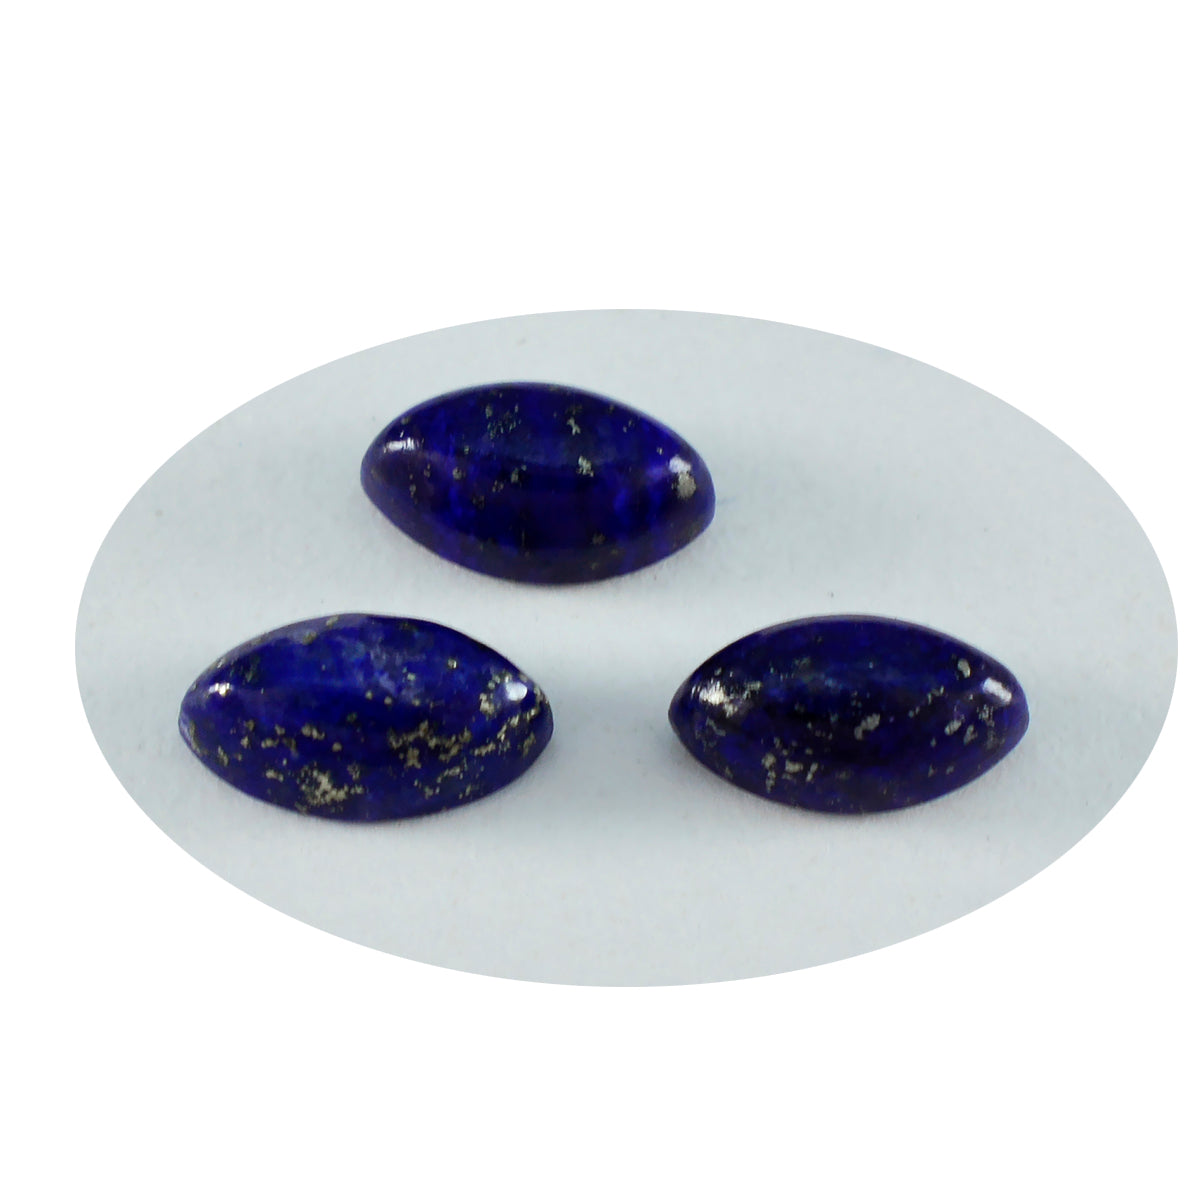 Riyogems 1PC Blue Lapis Lazuli Cabochon 6x12 mm Marquise Shape pretty Quality Stone